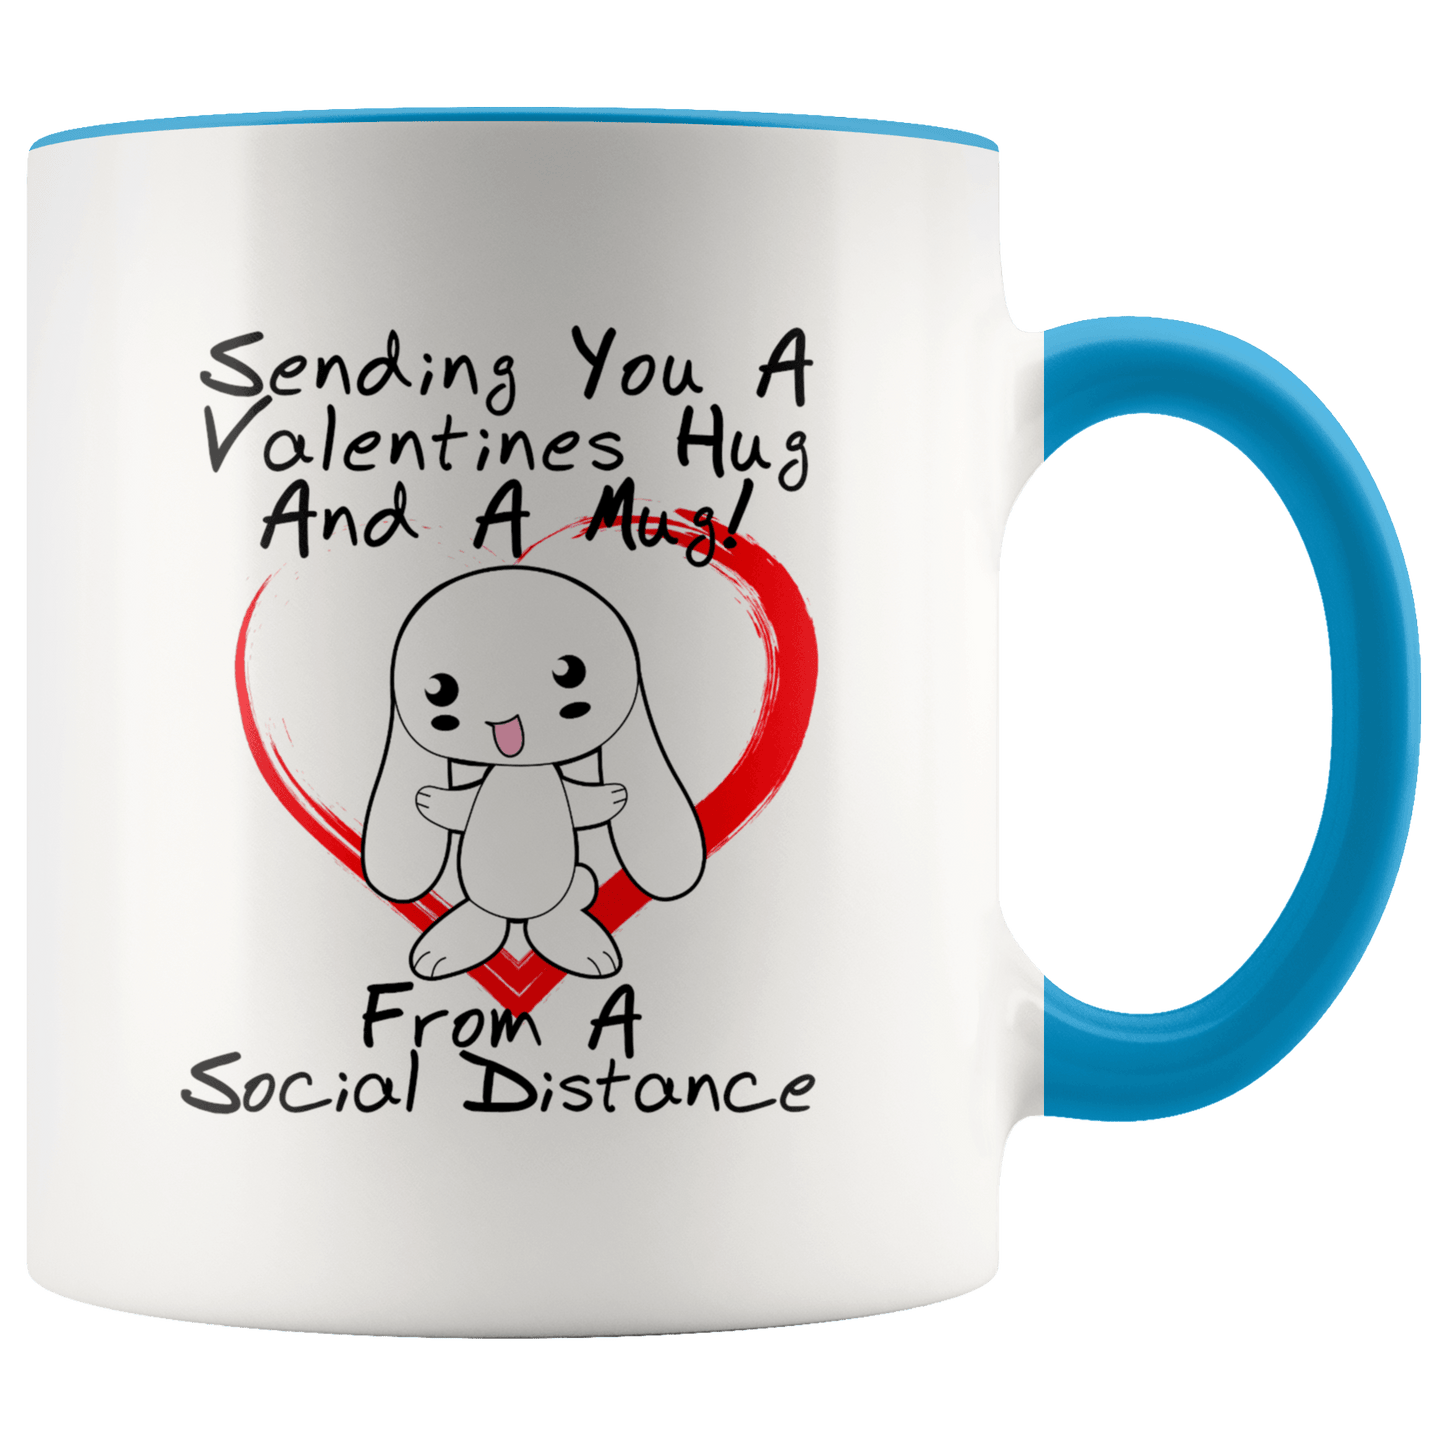 Social Distance Valentines Hug Mug - Giftagic